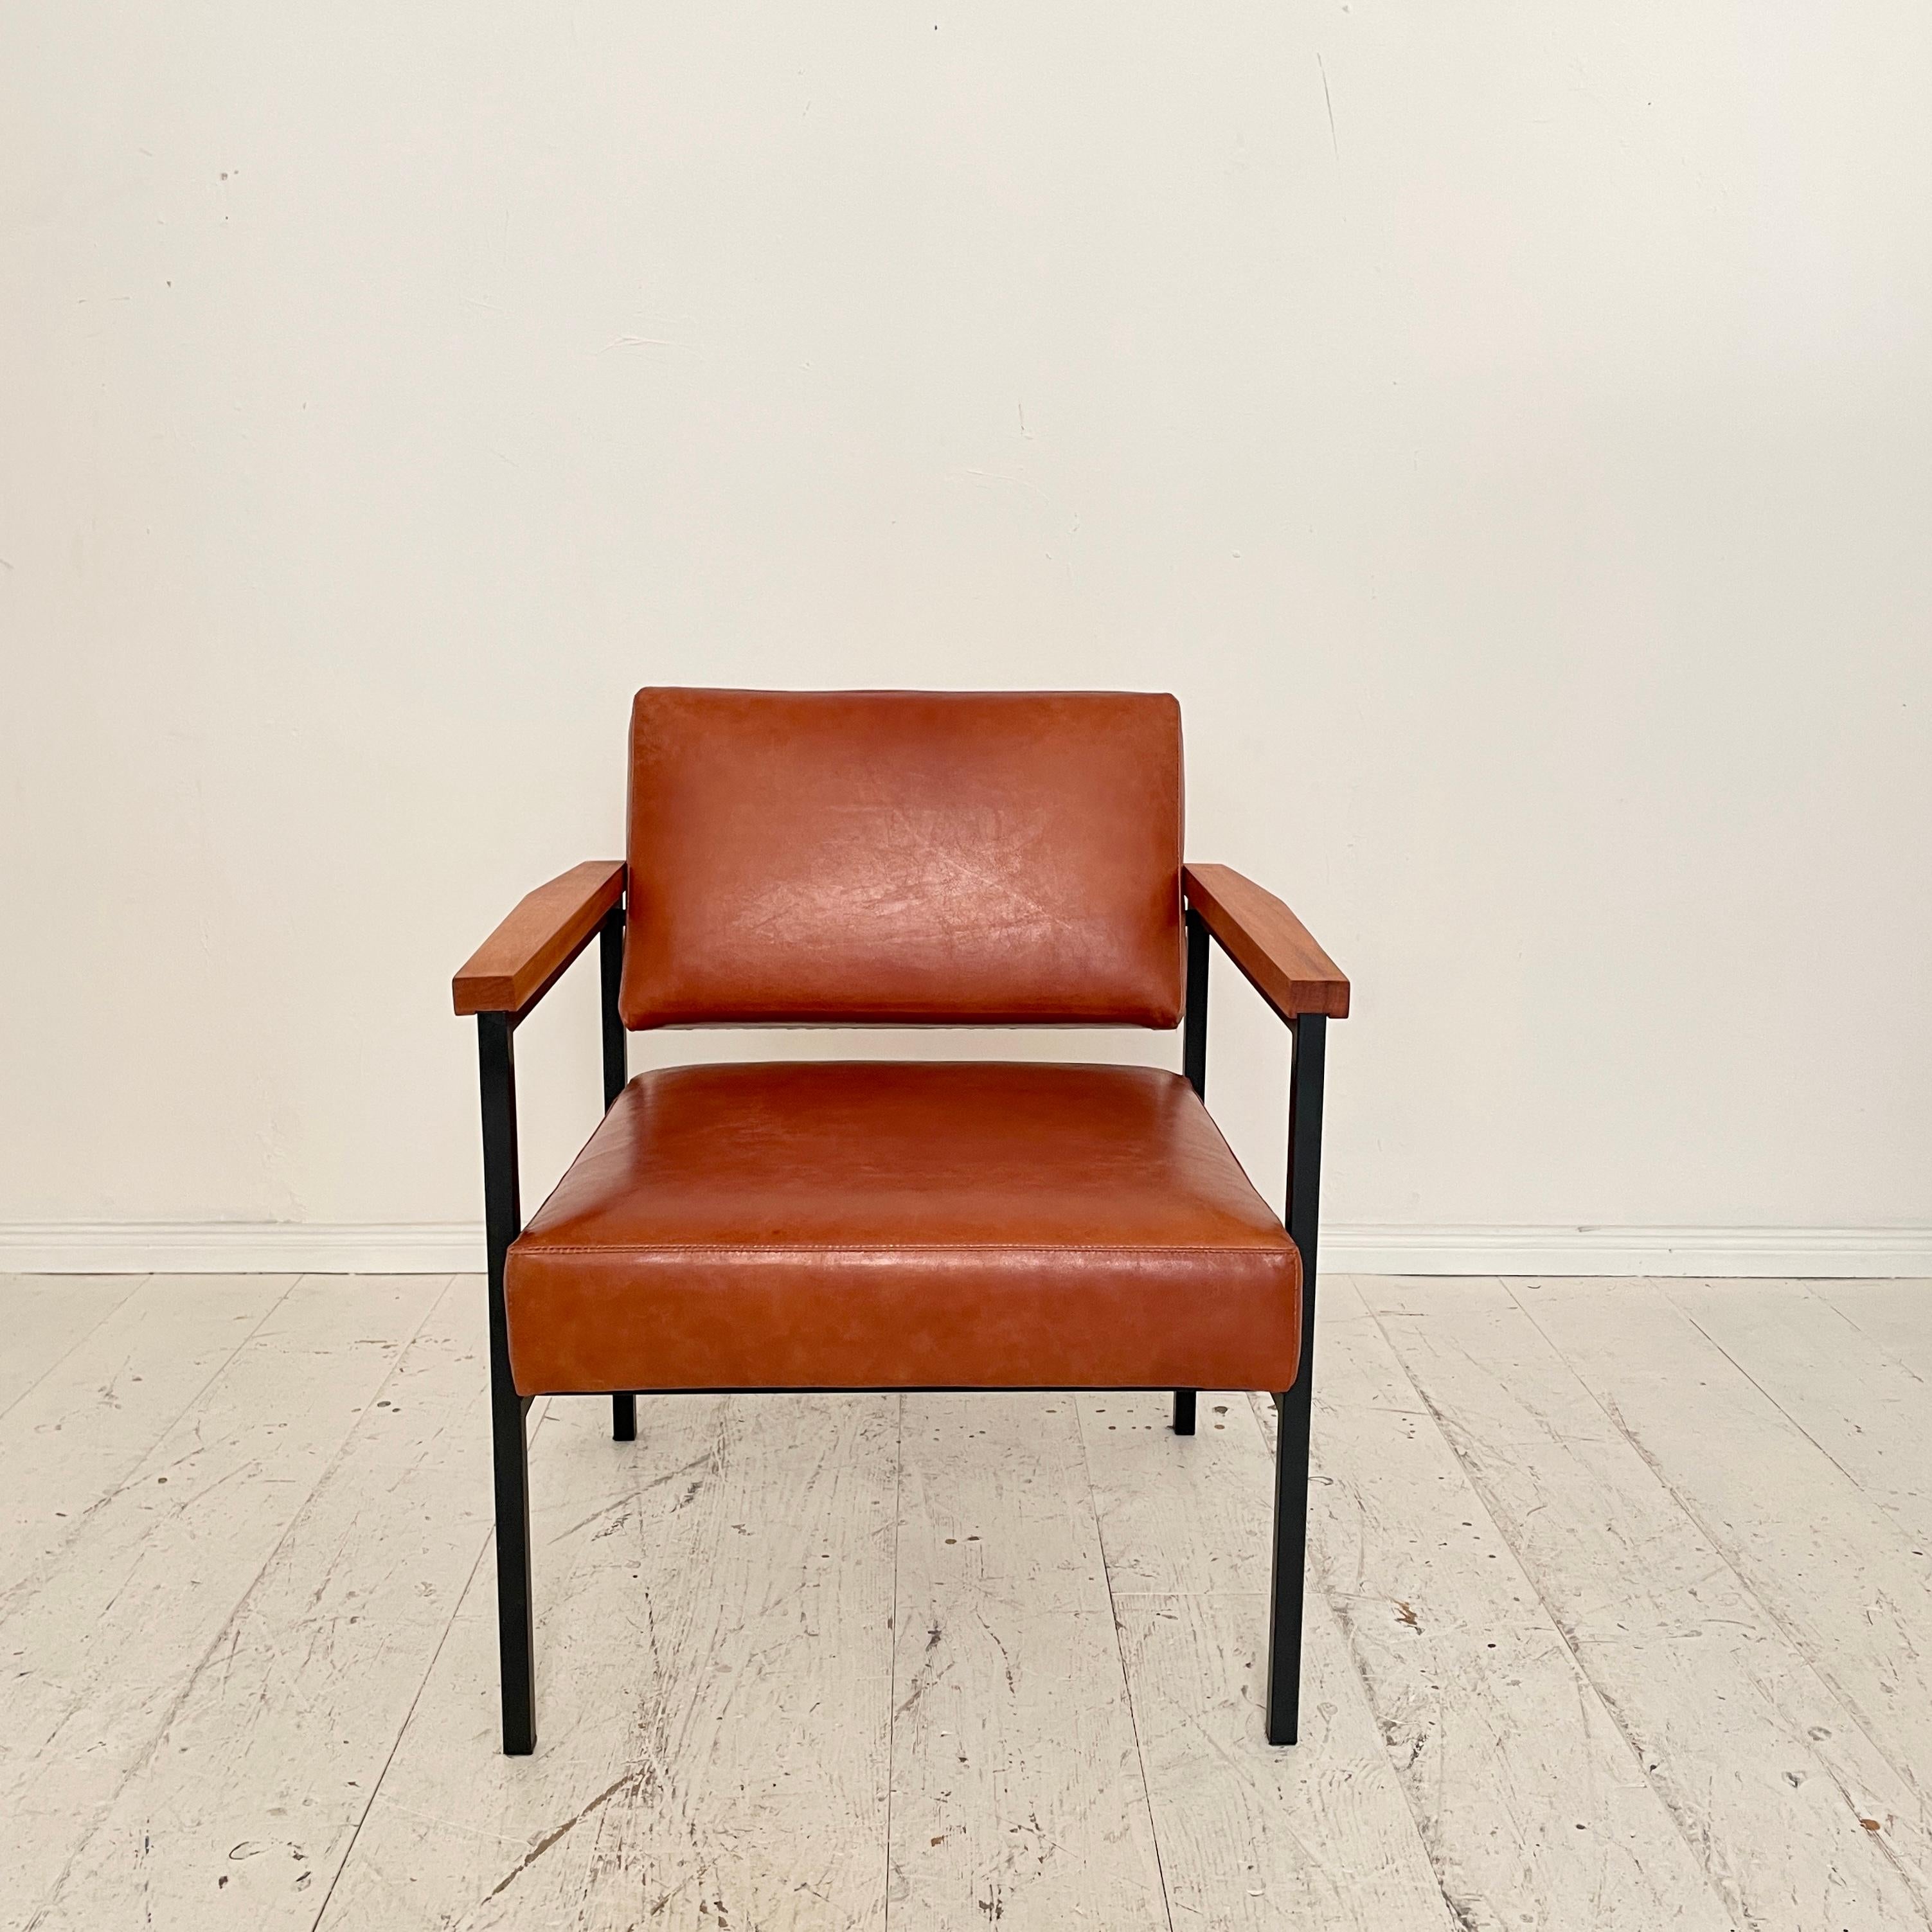 Cette magnifique chaise longue du milieu du siècle a été fabriquée dans les années 1960 en Allemagne du Sud. La chaise a une base en métal laqué noir et vient d'être retapissée en cuir marron.
 Une pièce unique qui attirera tous les regards dans